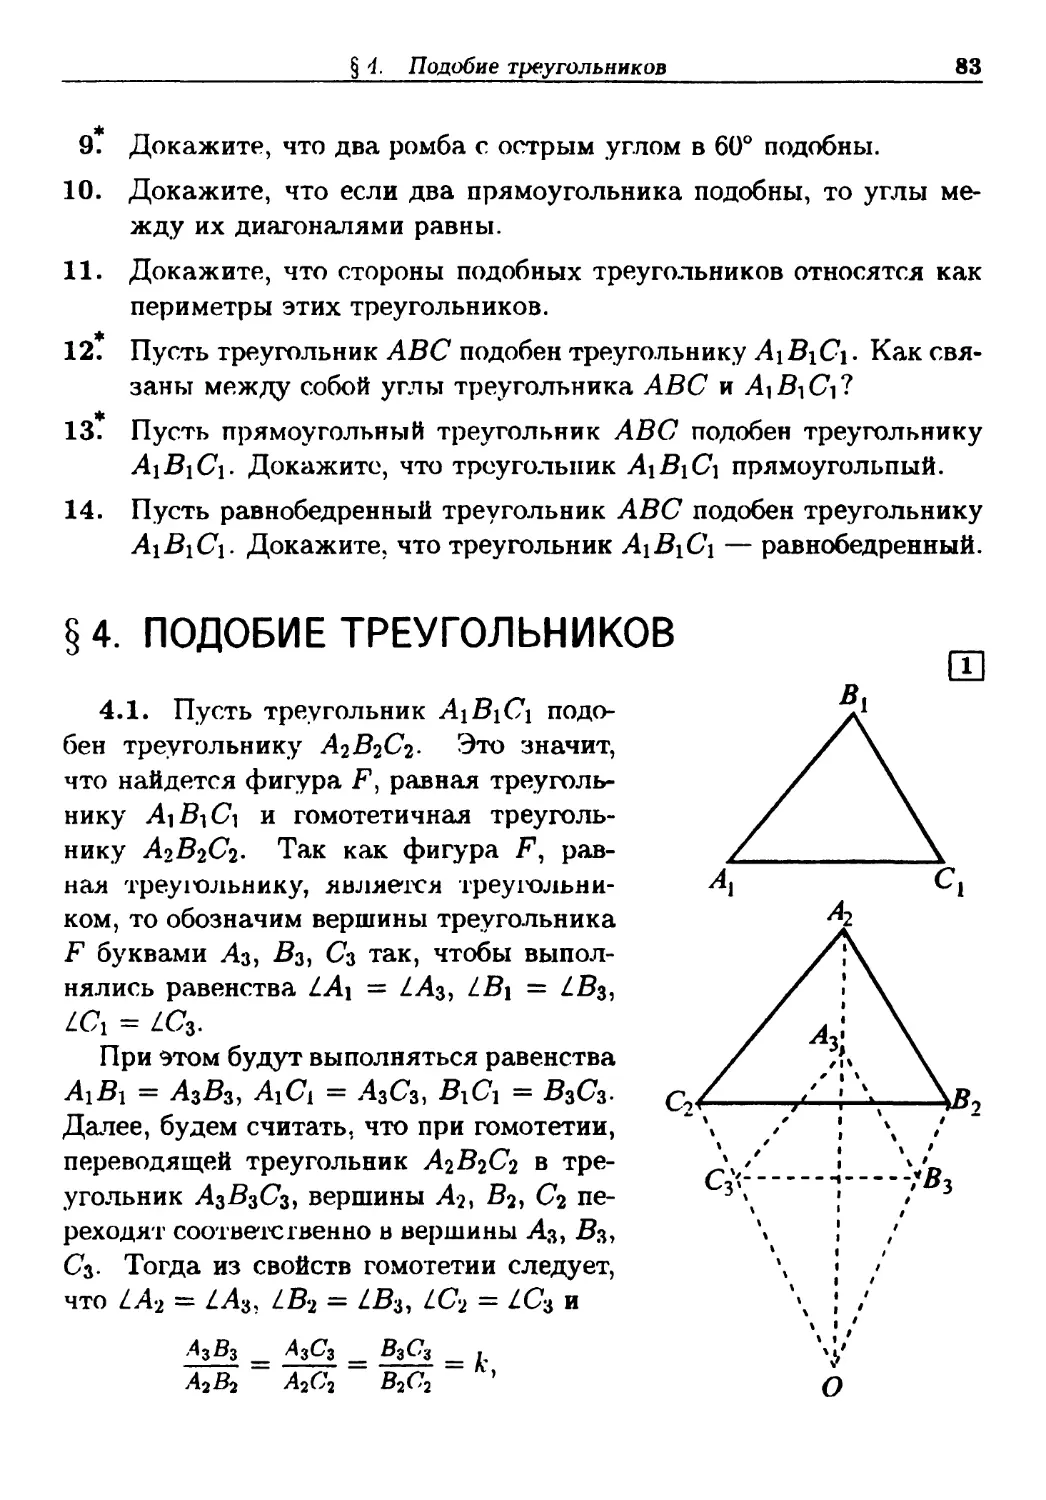 §4. Подобие треугольников